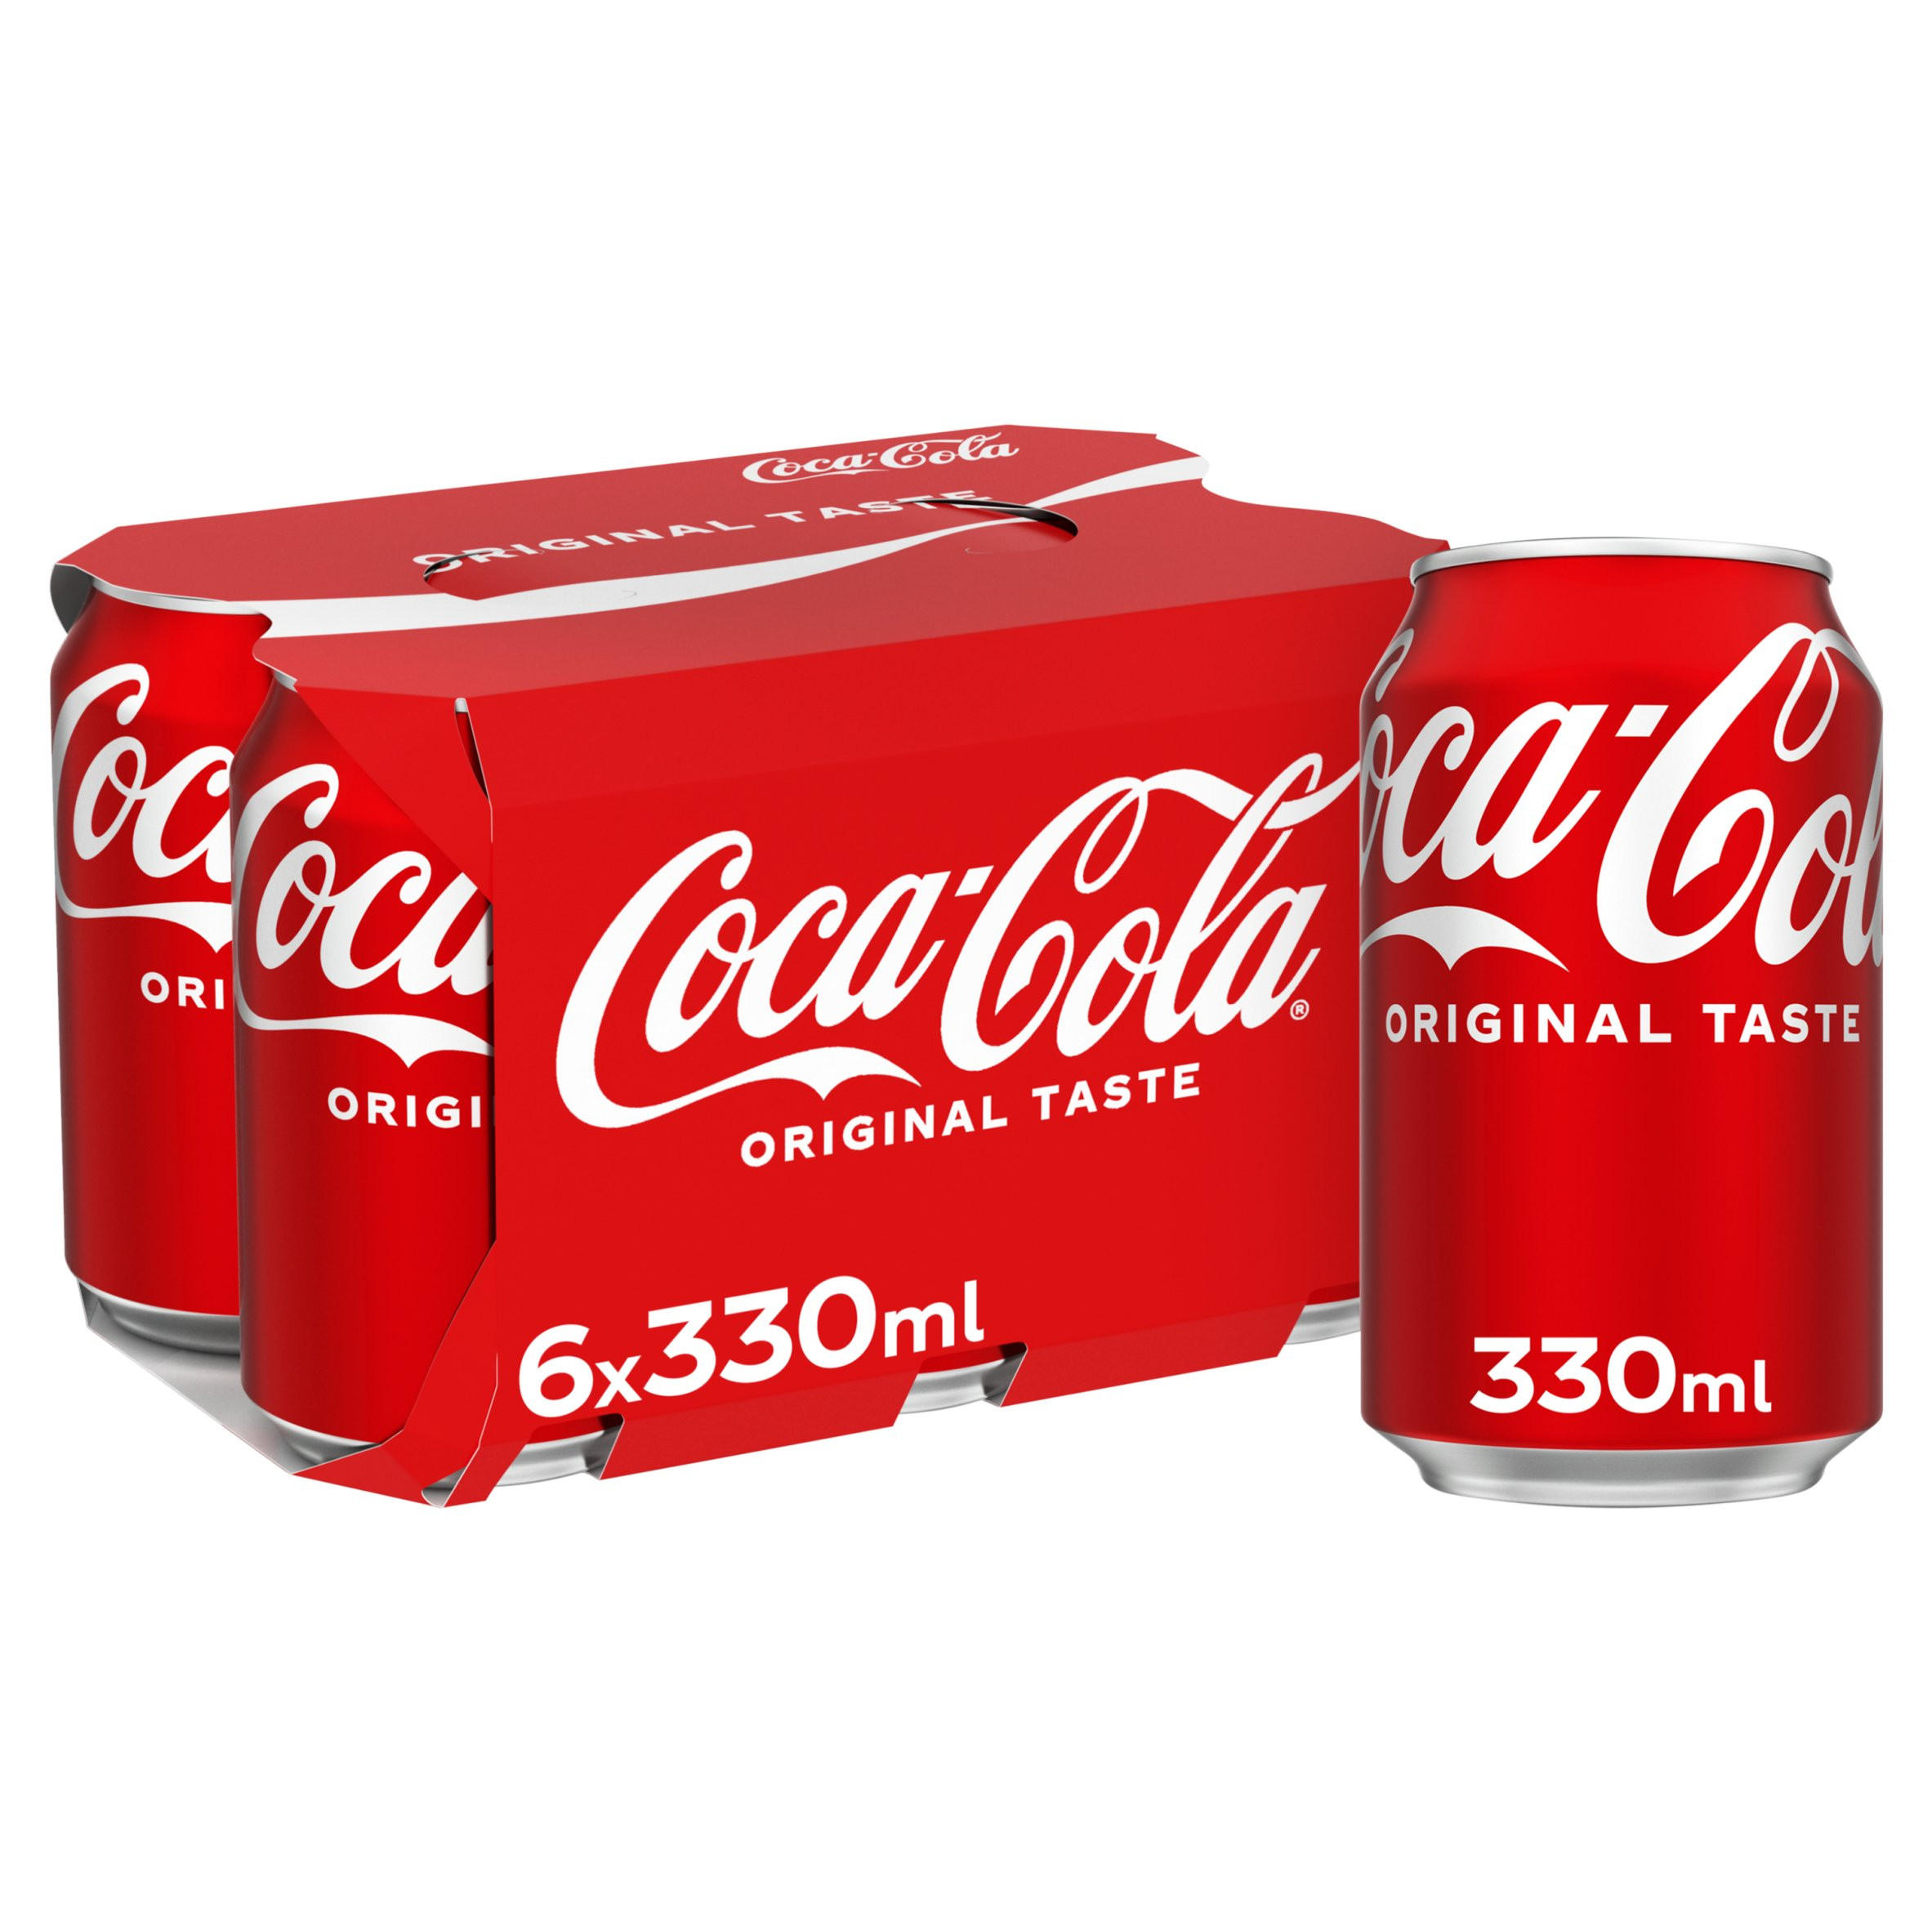 Coca-Cola Original Taste 6 x 330ml, Multipacks